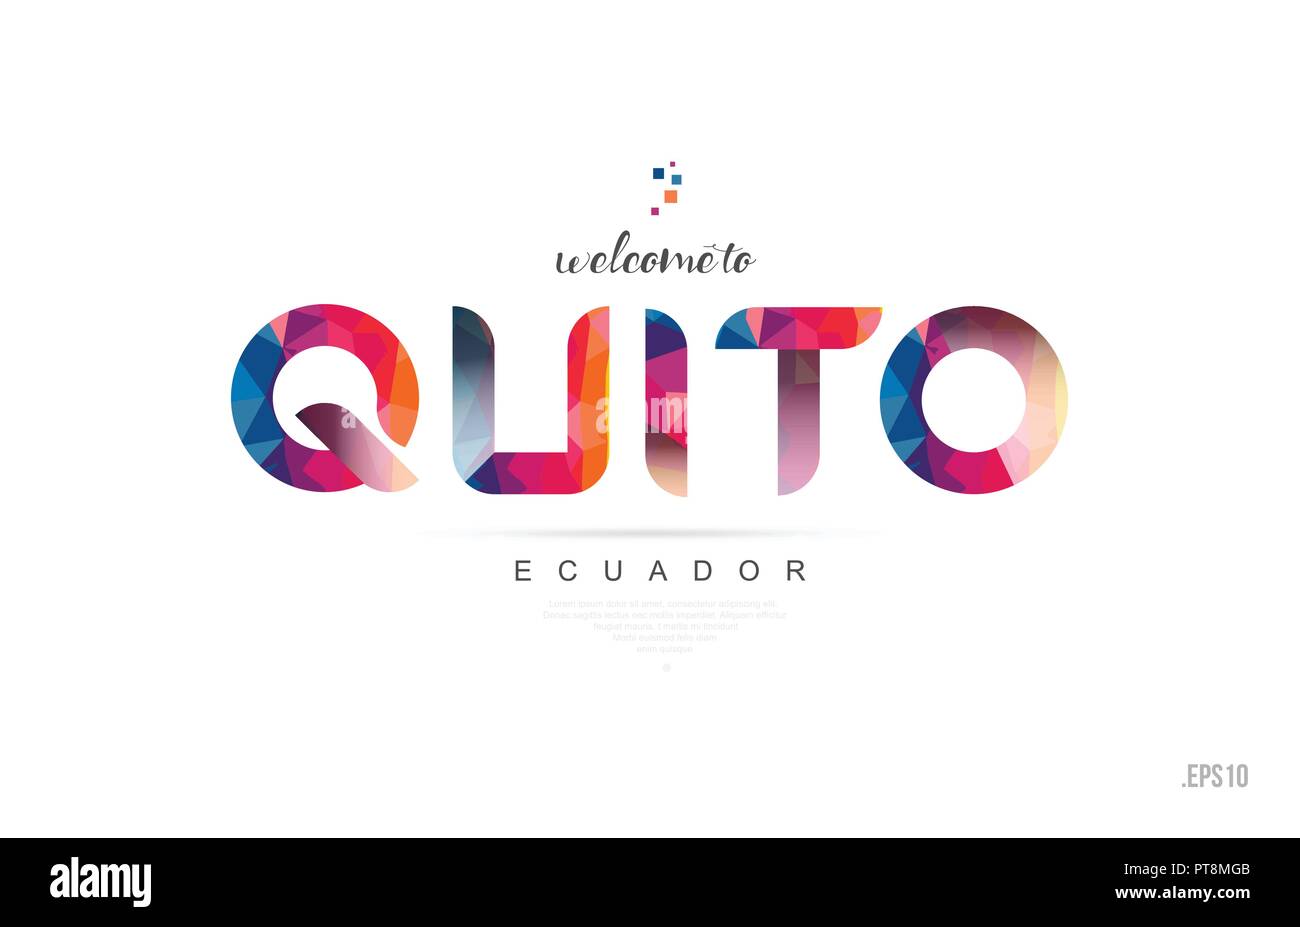 Willkommen Ecuador Karte und schreiben Design in bunten Regenbogenfarben und typografischen Icon Design nach Quito Stock Vektor